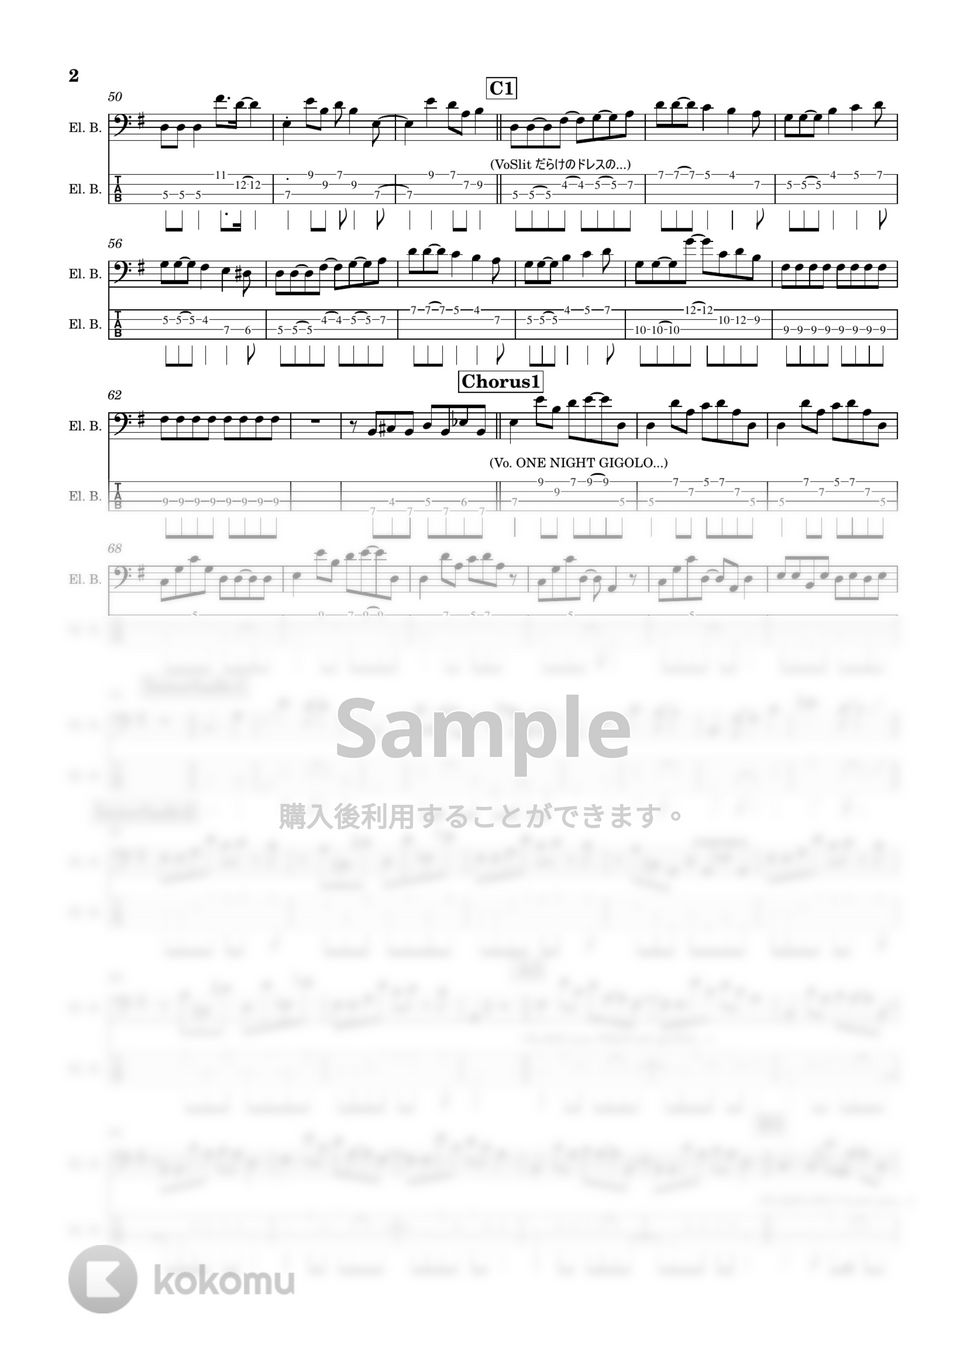 チェッカーズ - One Night Gigolo(ワンナイトジゴロ) (ベース/TAB/楽譜) by TARUO's_Bass_Score